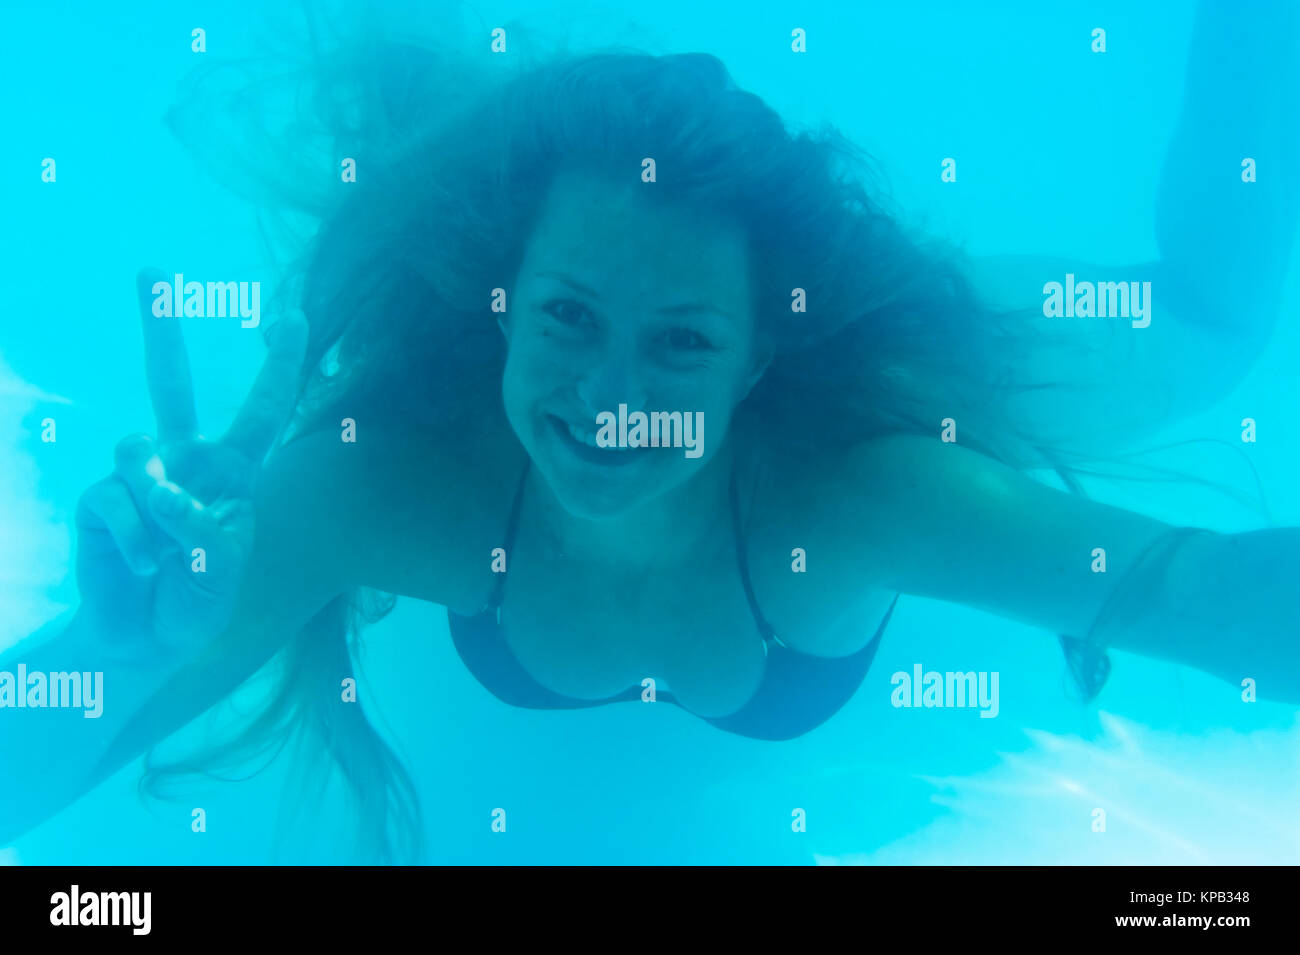 Model release, Junge Frau schwimmt unter Wasser und macht Fingerzeichen - woman under water Stock Photo